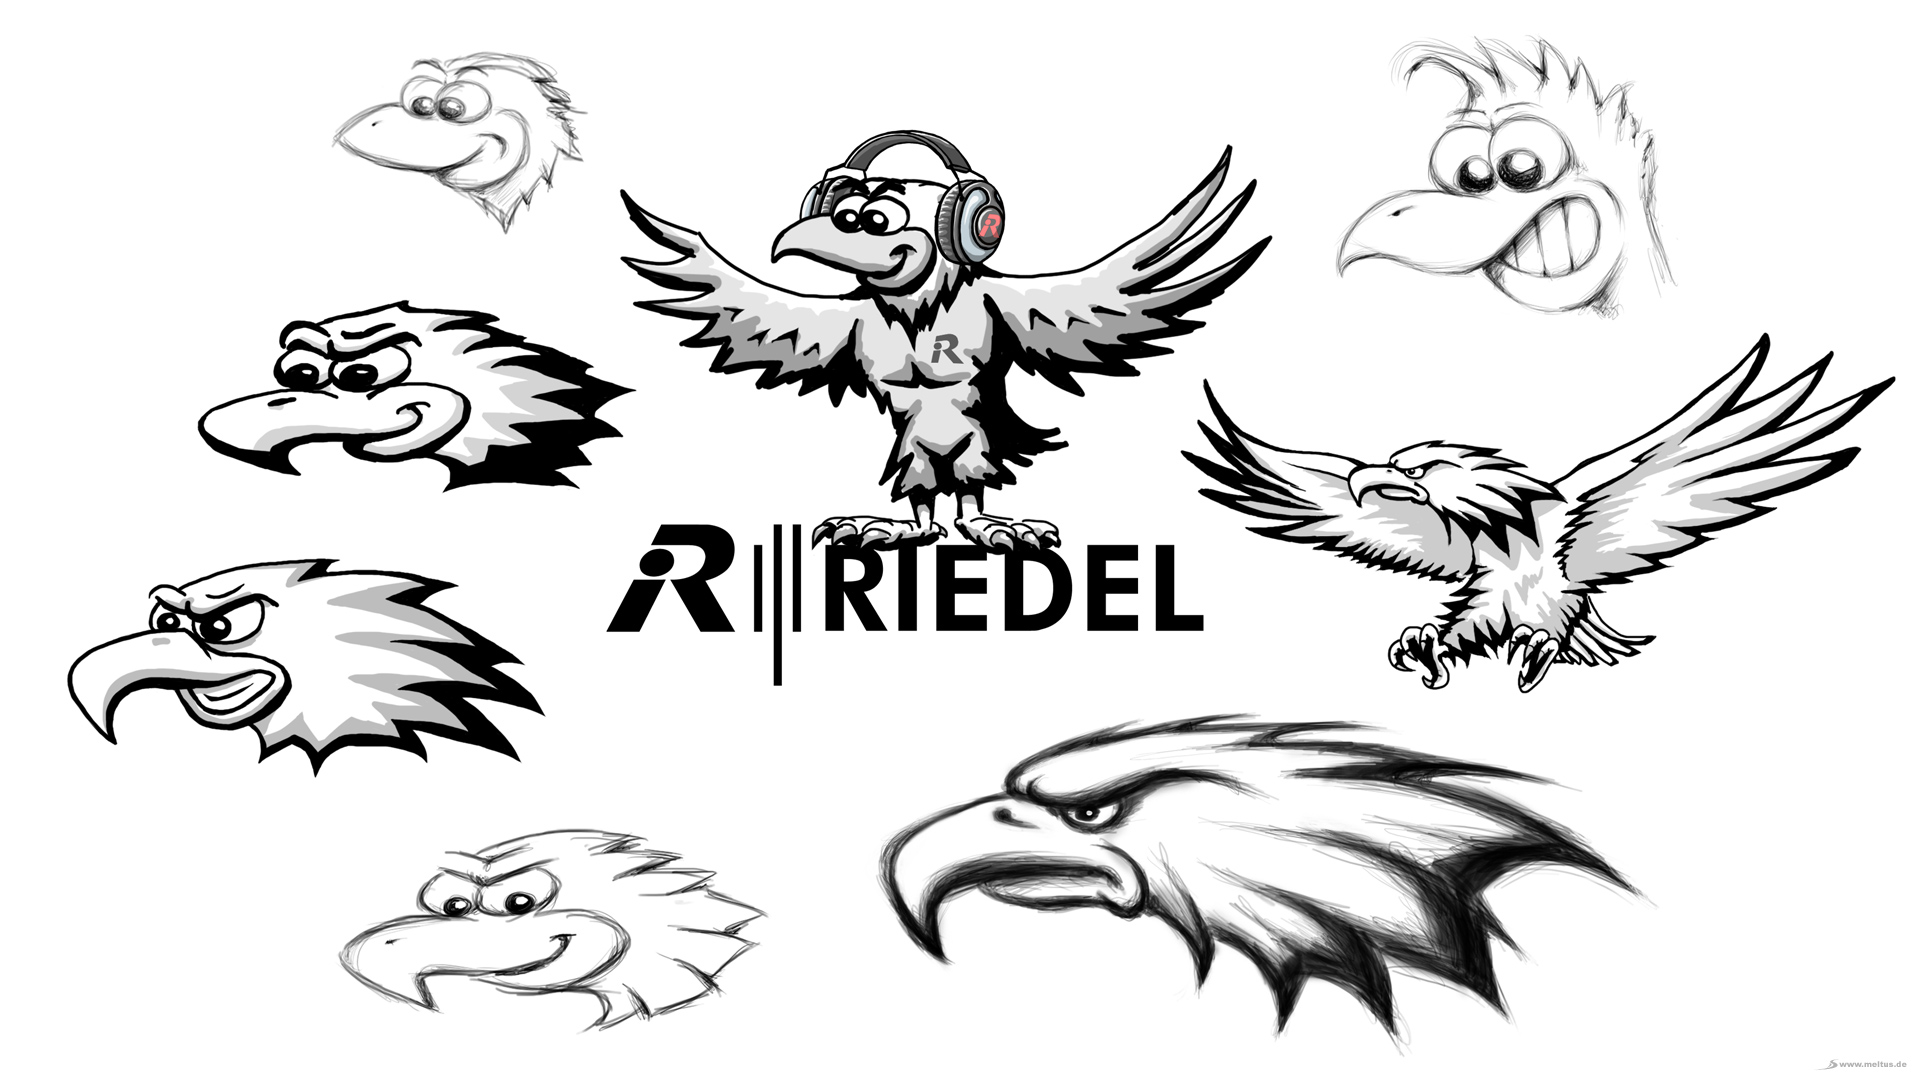 2D Cartoon: Riedel Adler - Adler Cartoon/Maskottchen Entwurf für Riedel.